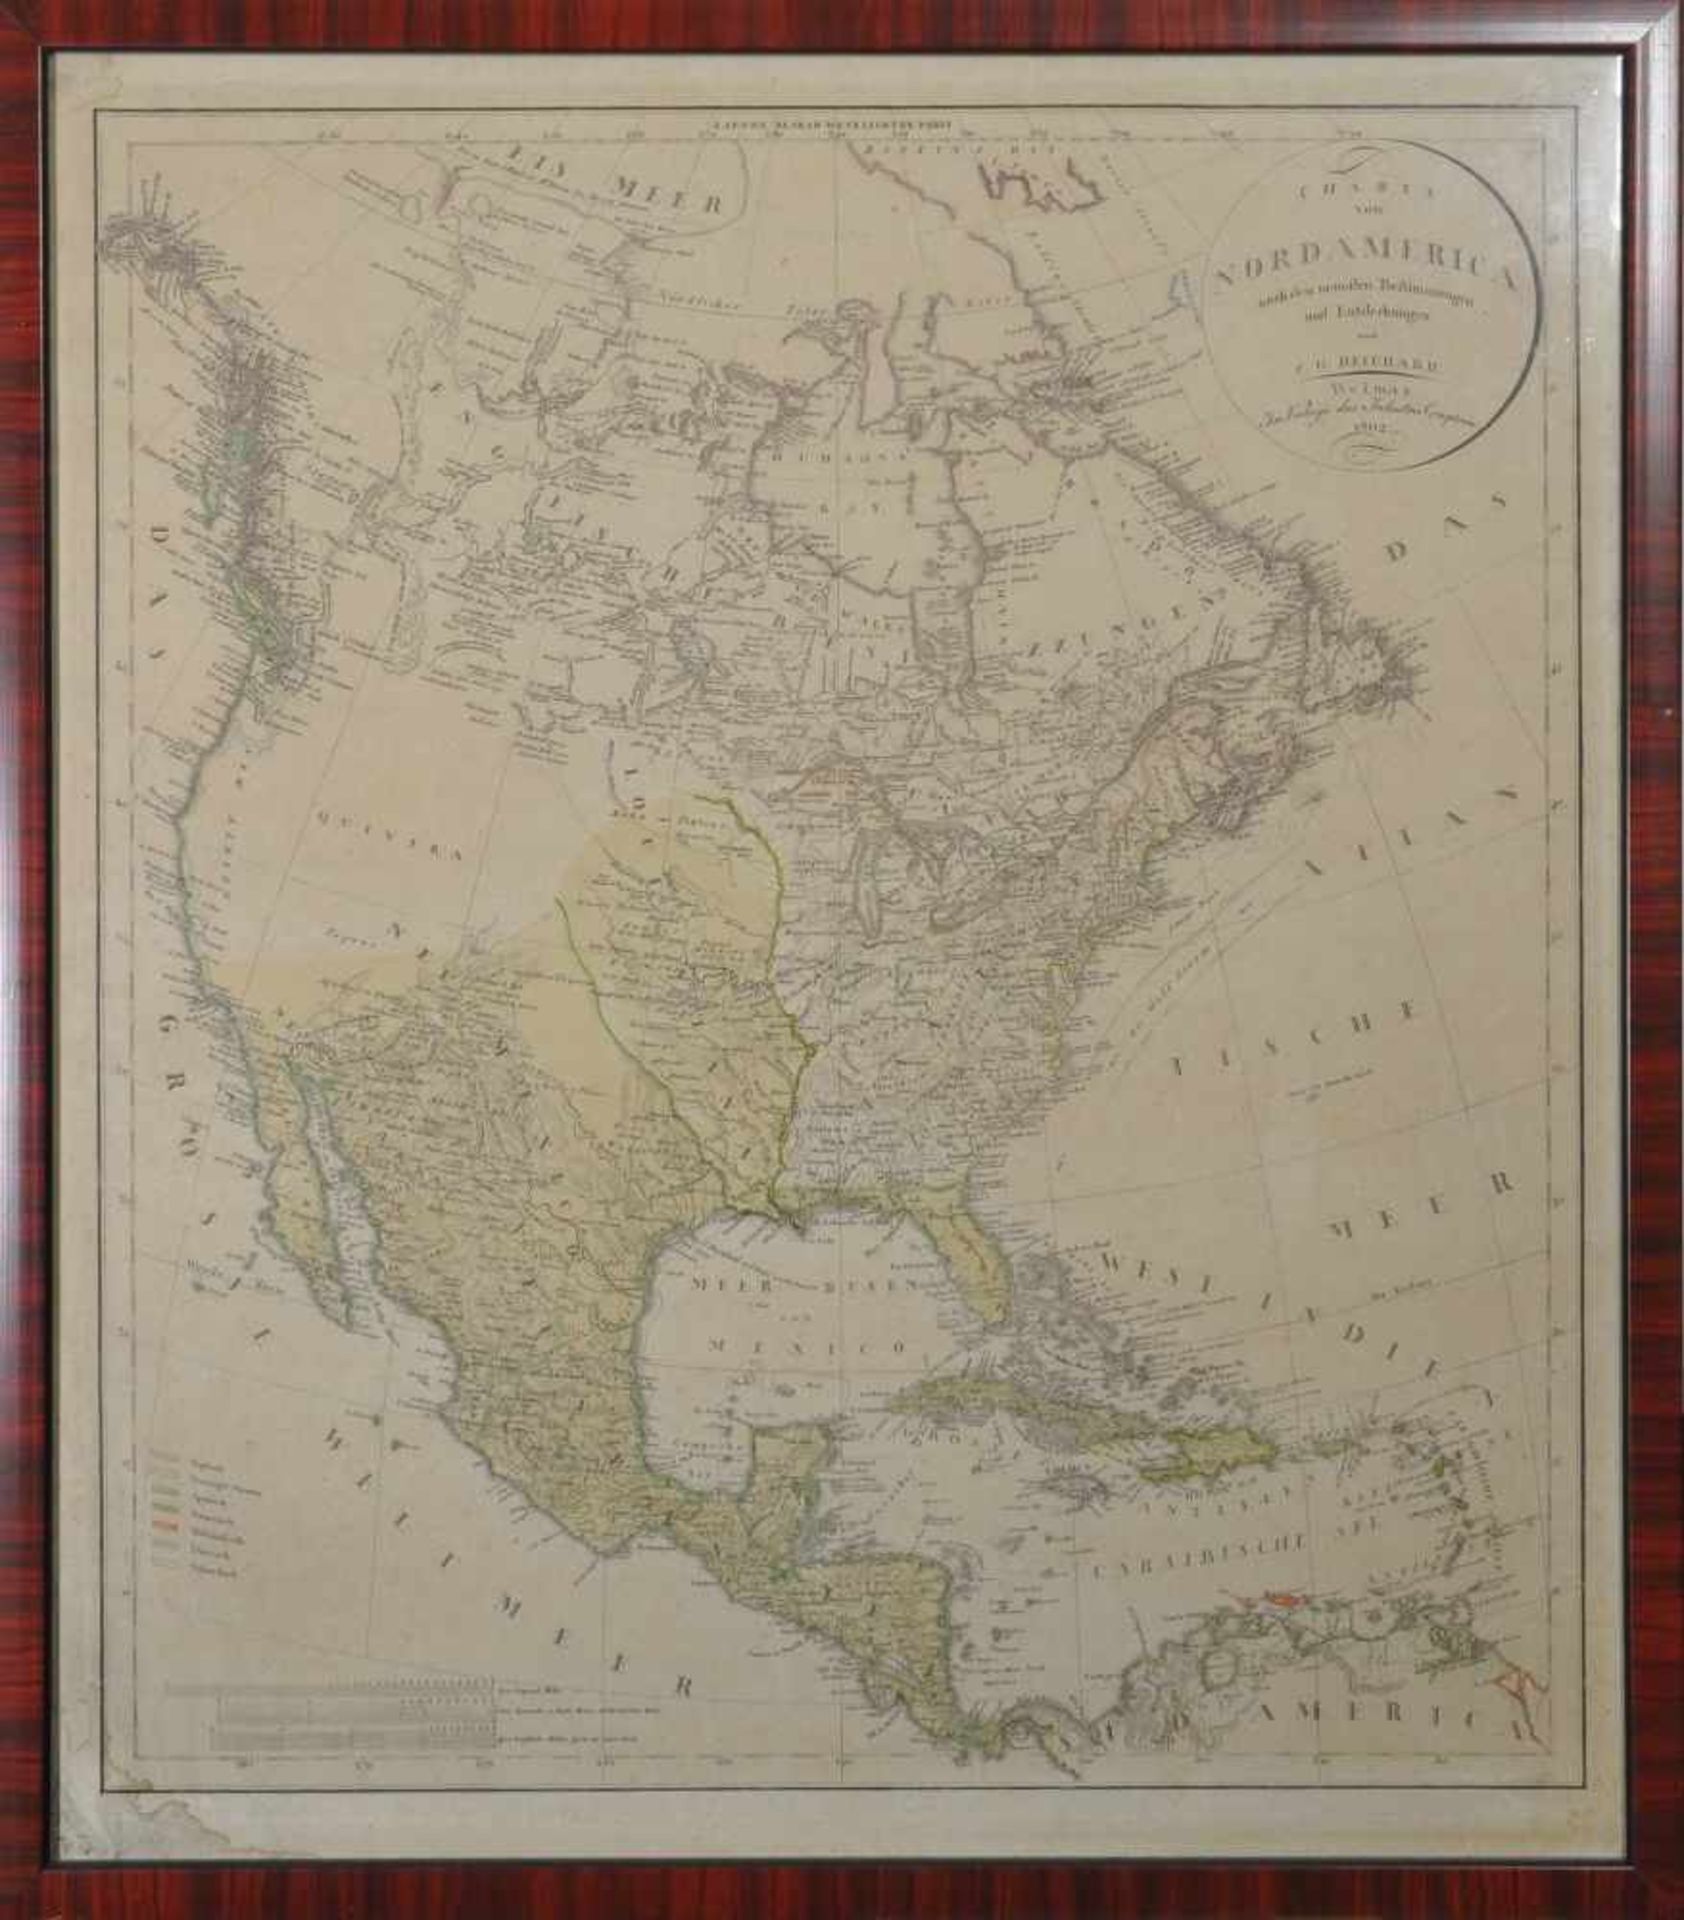 Karte von Nordamerika C.G. Reichard, Weimar 1802, Kupferstich mit Colorierung, Titel "Charte von